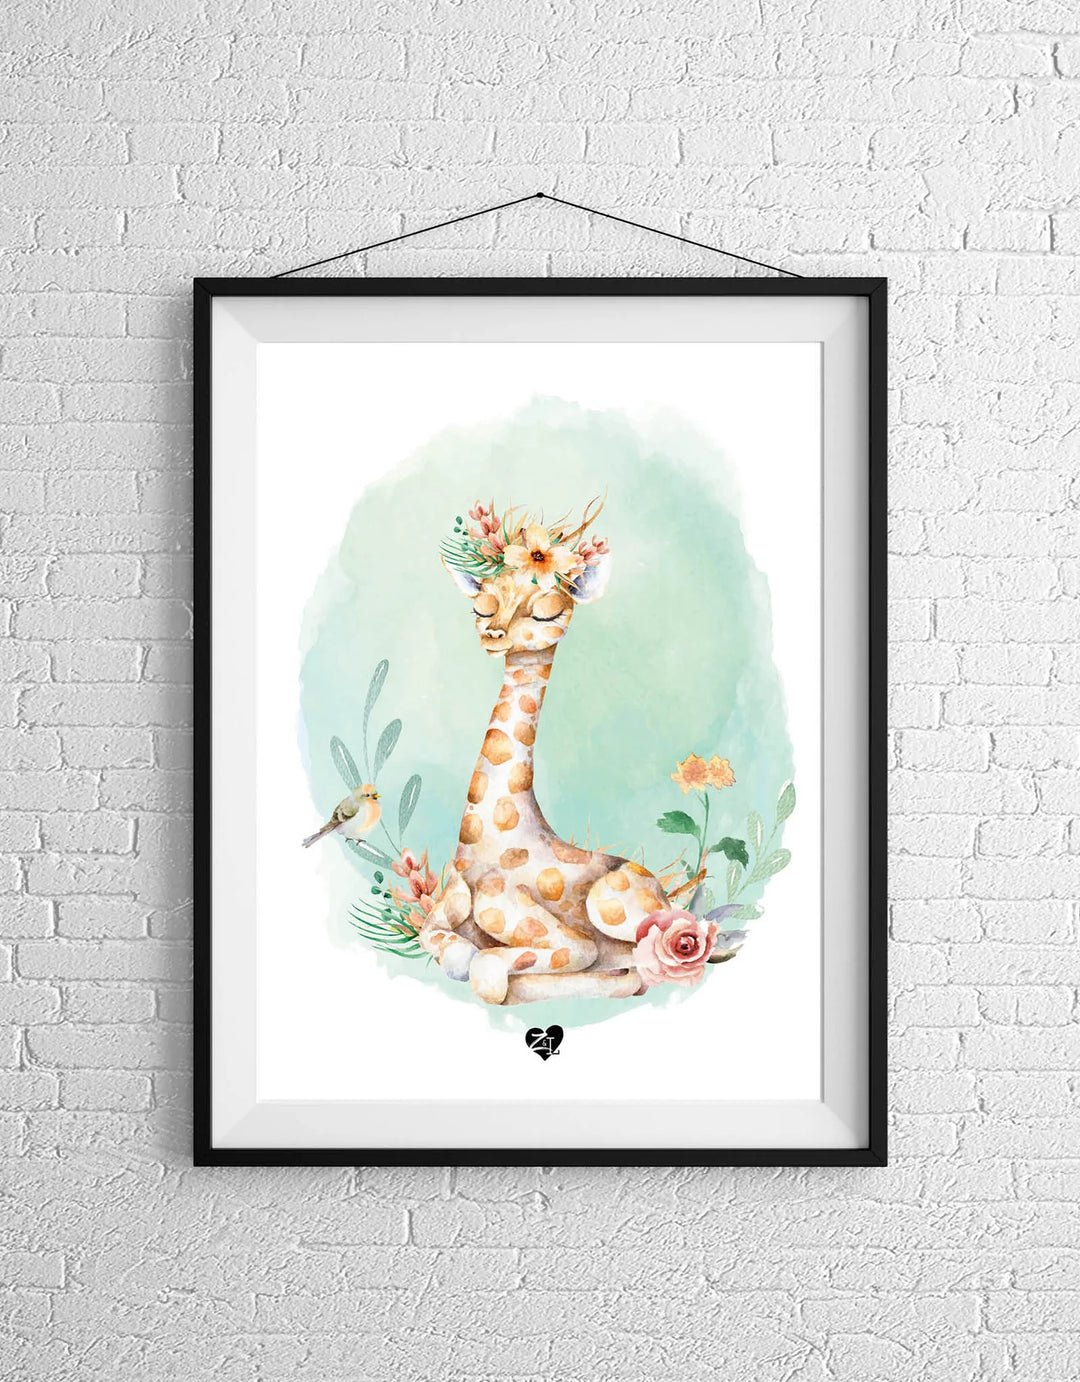 The giraffe Print